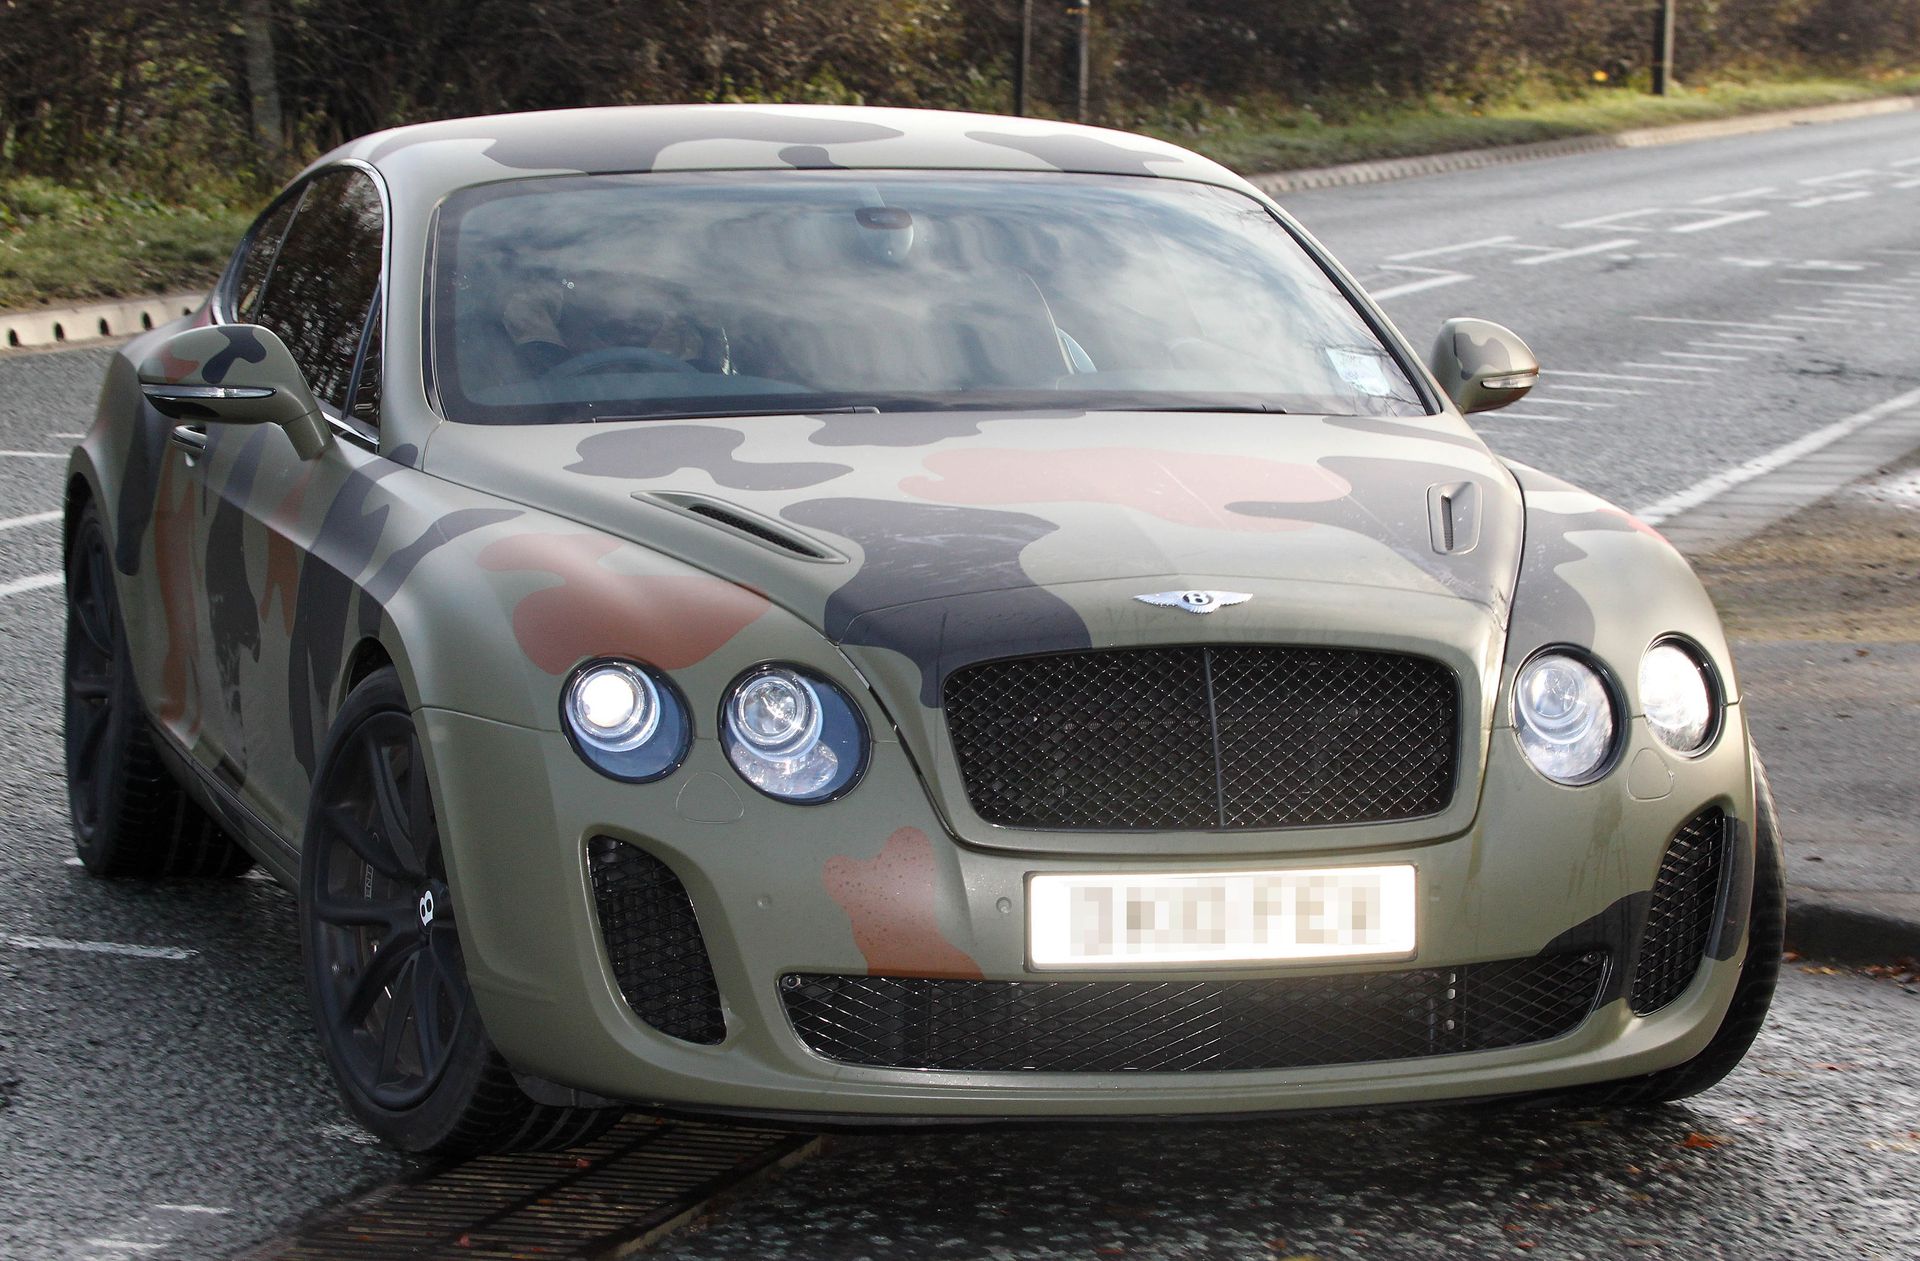 A méregdrága Bentley-t terepszínűvé változtatta, megdöbbent a világ a gyönyörű kocsi elcsúfításán / Fotó: Profimedia